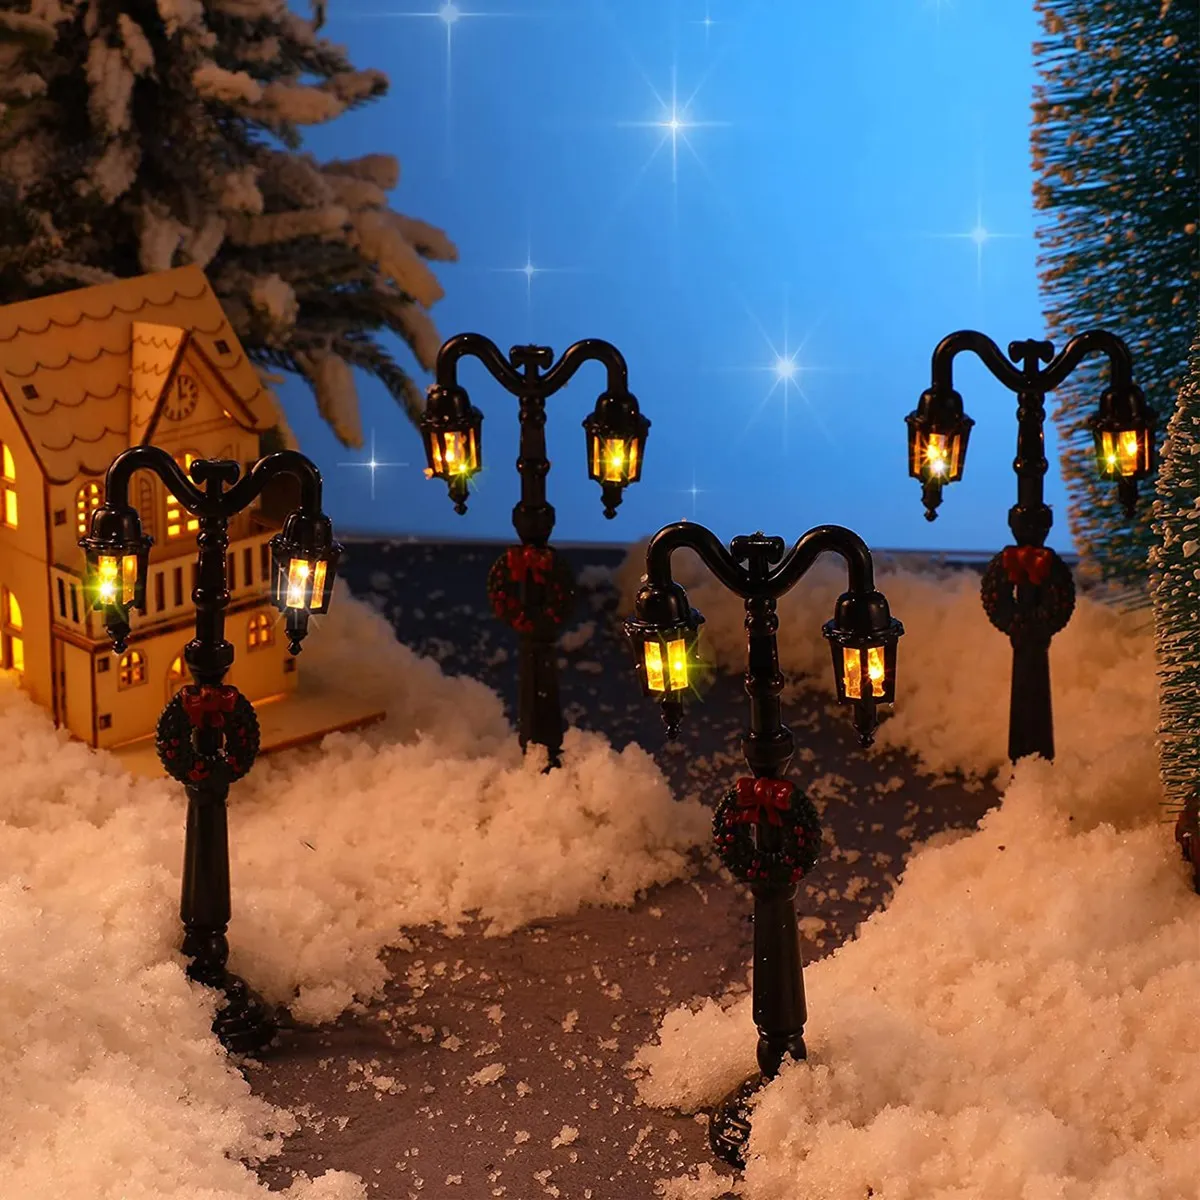 

8 шт., Новогодняя лампа, Сказочная лампа, поезда, фонарь, миниатюрная уличная лампа, декоративные уличные фонари, кукольный домик